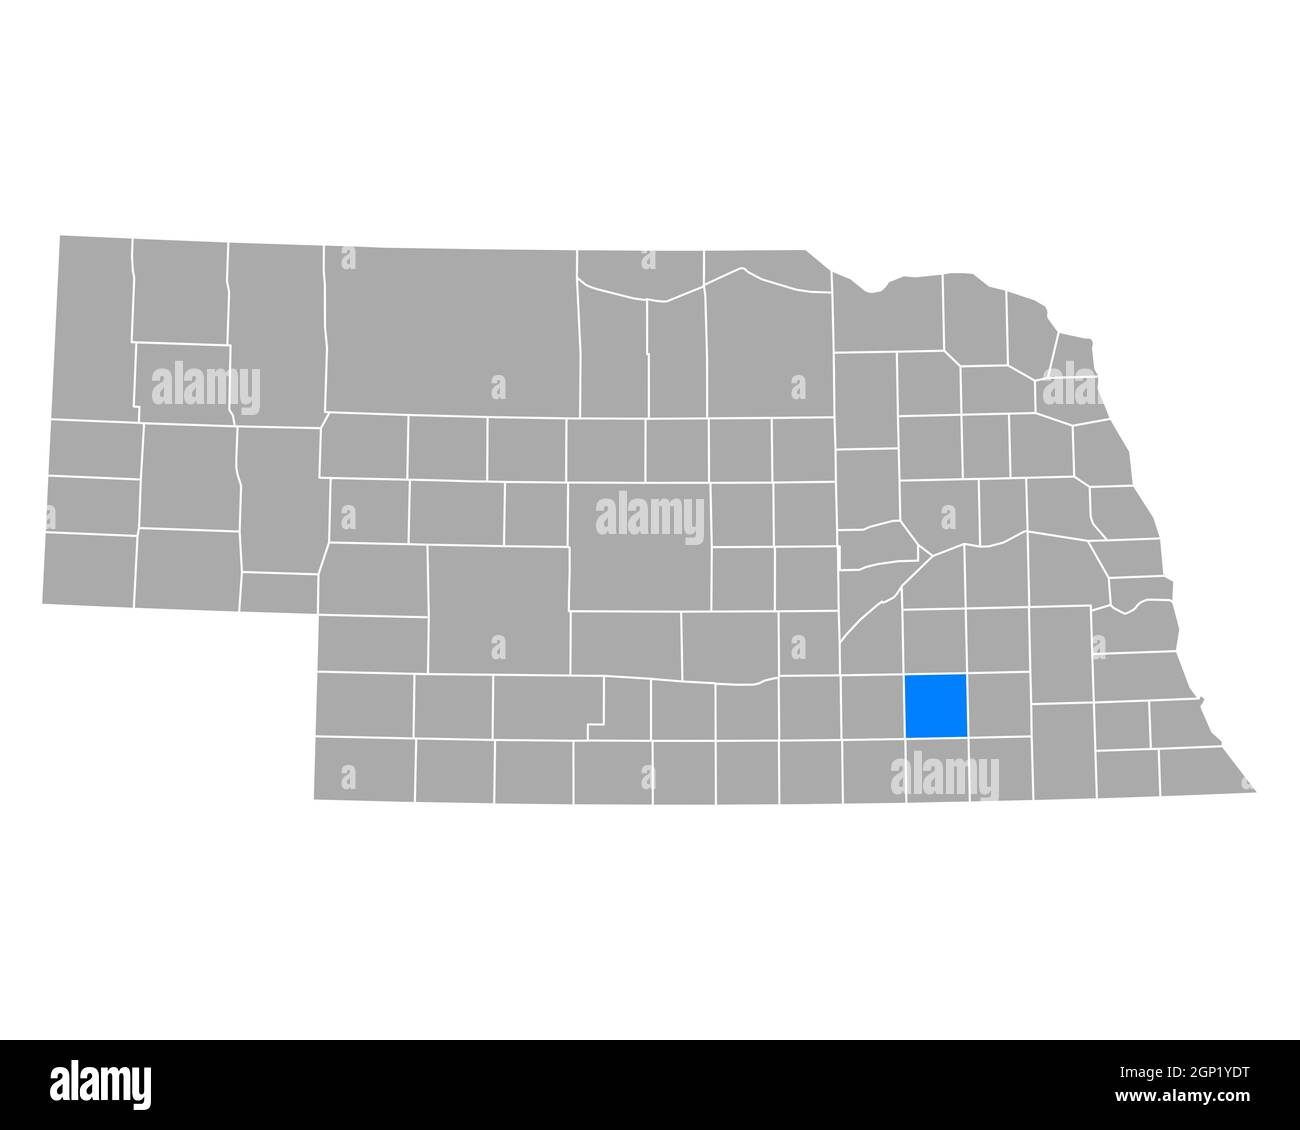 Map Of Fillmore In Nebraska 2GP1YDT 